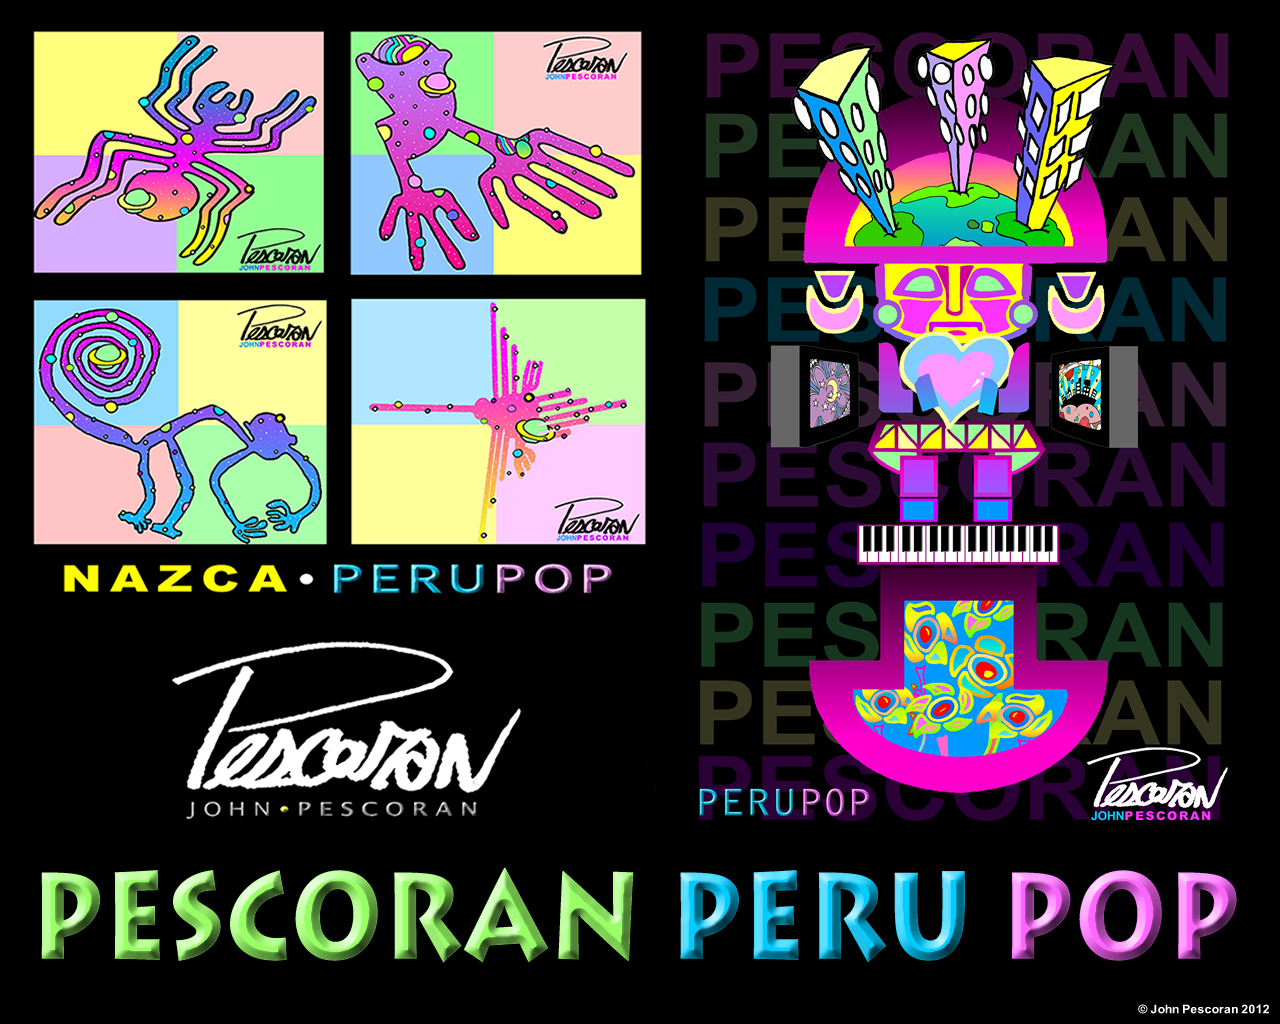 ... /76glkjQmZBw/s1600/PESCORAN+-+PERU+POP+-+Wallpaper+Promo.jpg